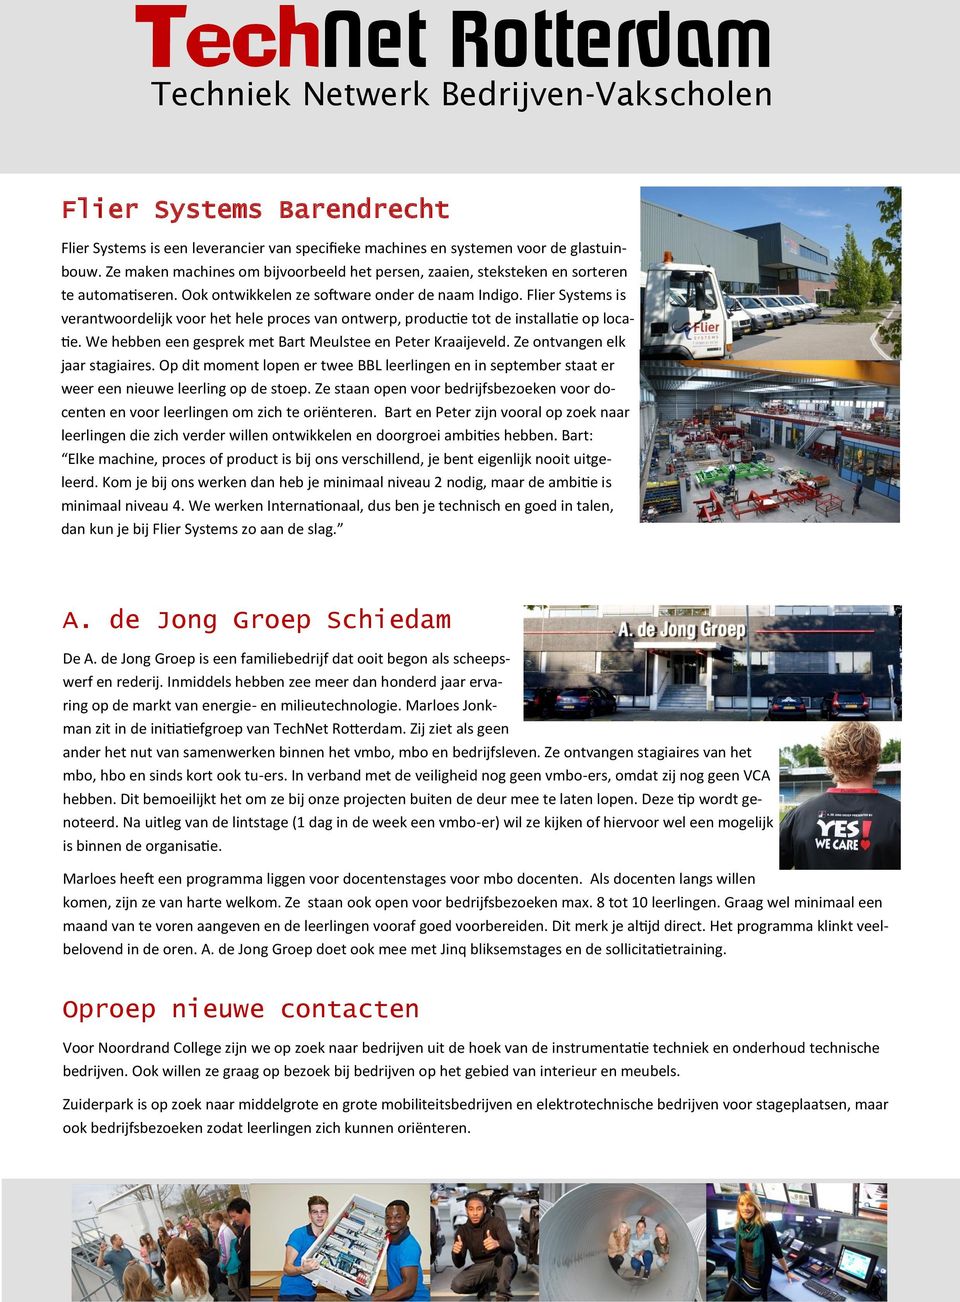 Flier Systems is verantwoordelijk voor het hele proces van ontwerp, productie tot de installatie op locatie. We hebben een gesprek met Bart Meulstee en Peter Kraaijeveld.